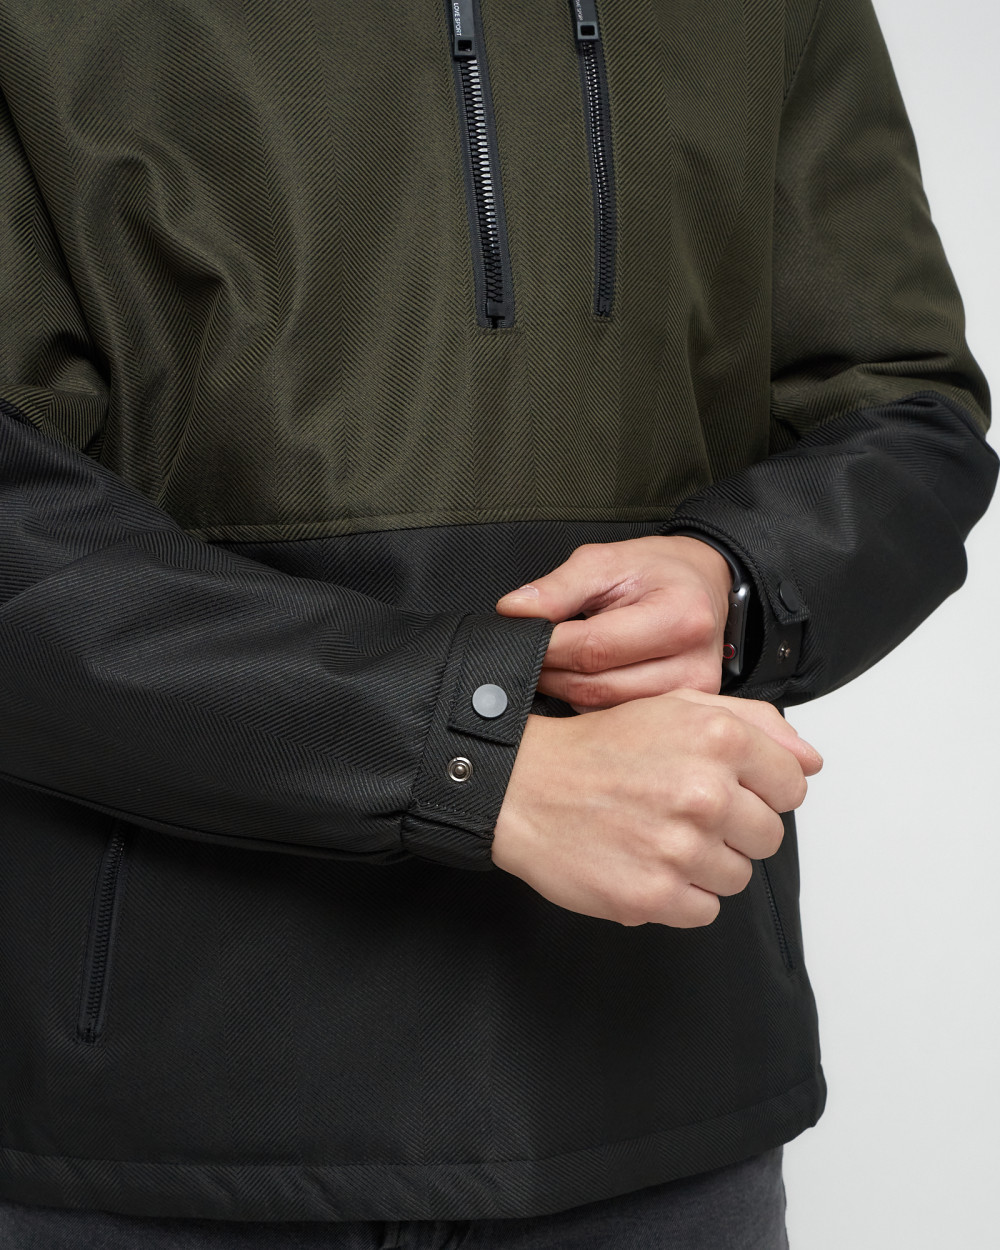 Купить куртку анорак спортивную мужскую оптом от производителя недорого в Москве 3307Kh 1